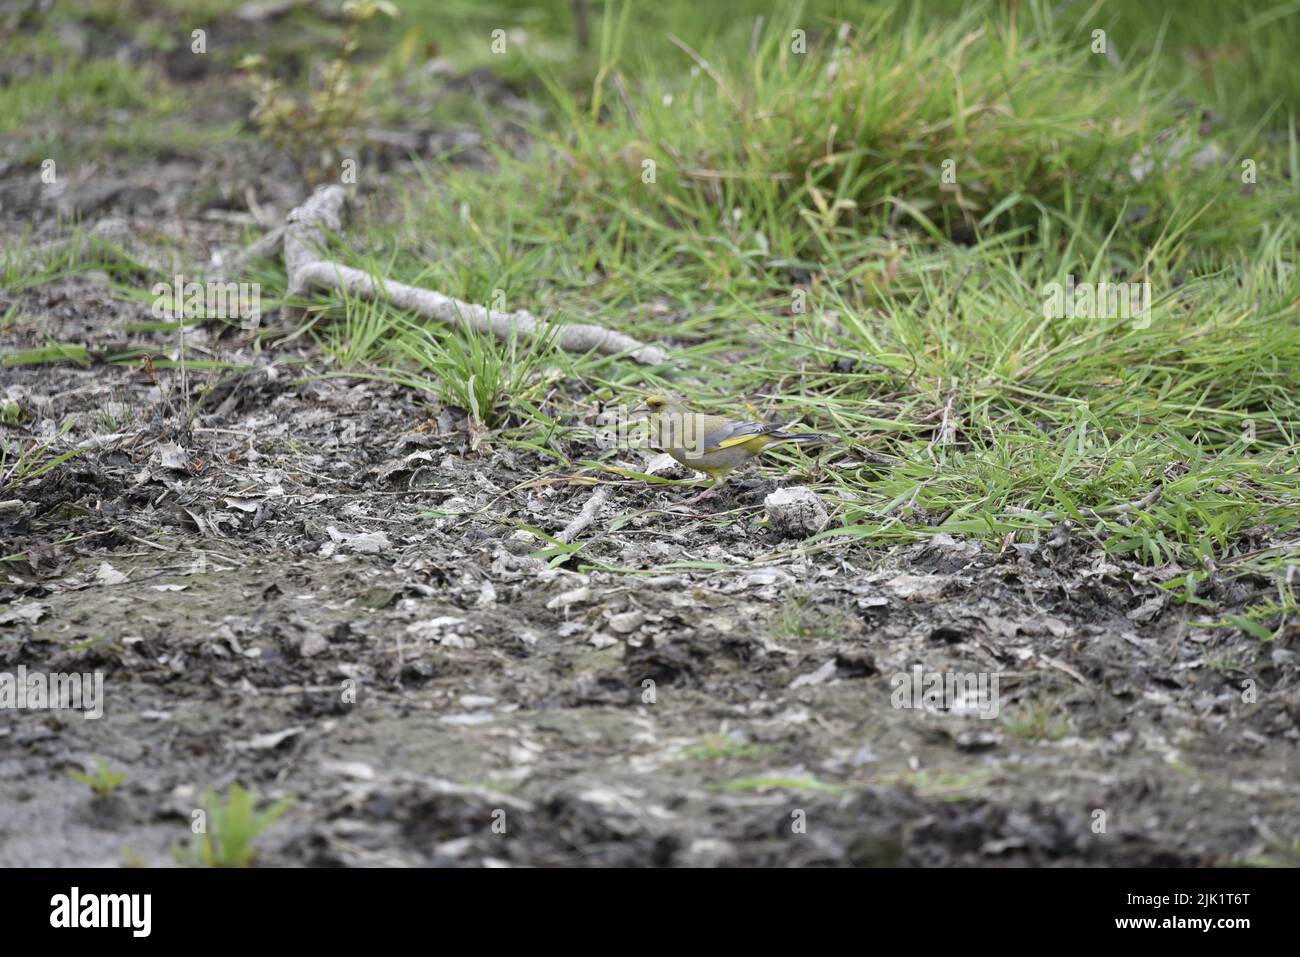 Verdfinch europeo (Carduelis chloris) in piedi a sinistra su un fiume fangoso, Medio d'immagine, contro uno sfondo verde erba nel Regno Unito Foto Stock